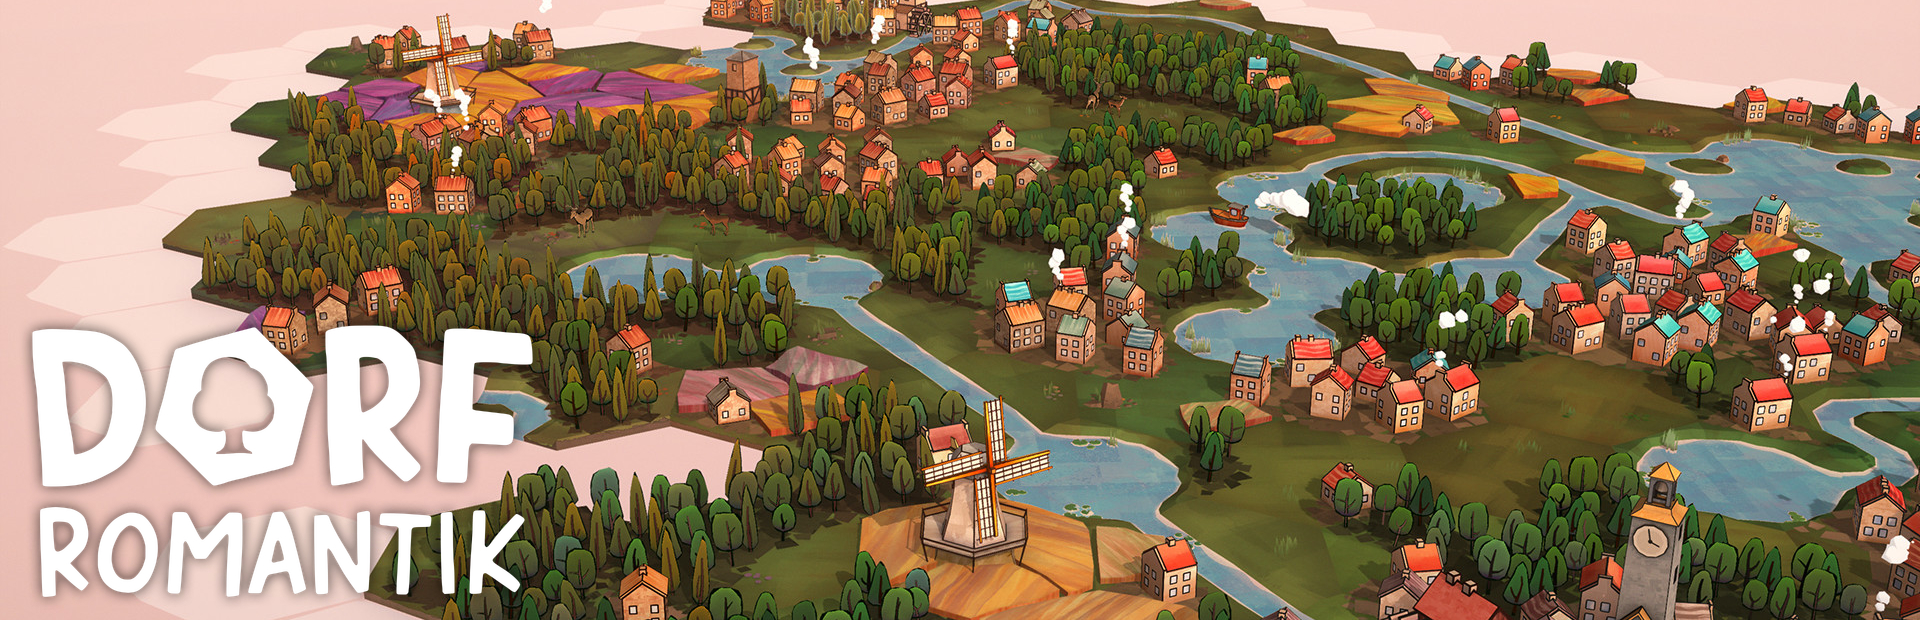 دانلود بازی Dorfromantik برای PC | گیمباتو